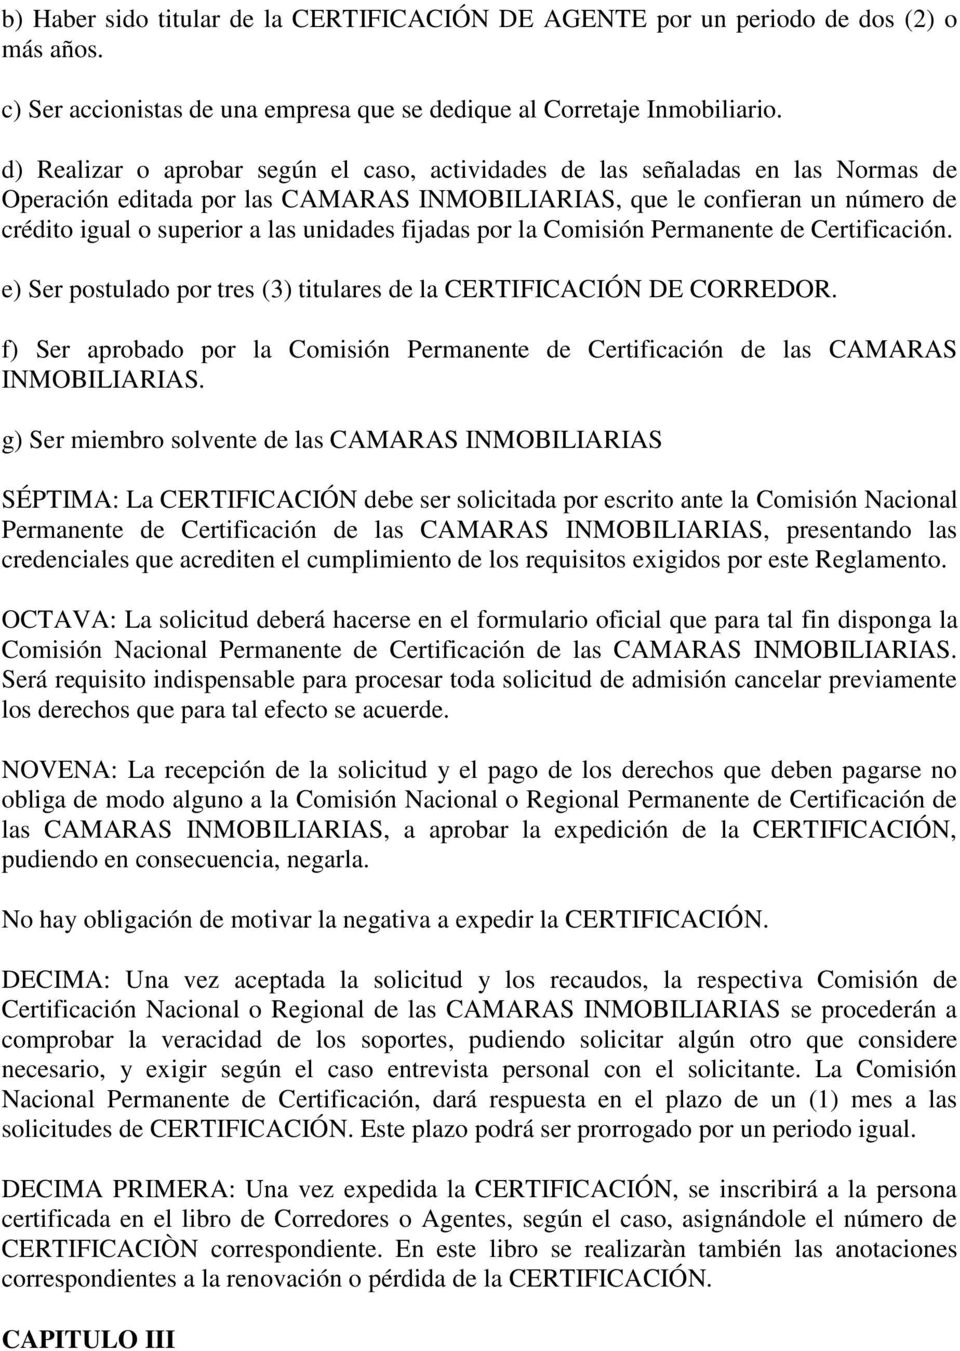 unidades fijadas por la Comisión Permanente de Certificación. e) Ser postulado por tres (3) titulares de la CERTIFICACIÓN DE CORREDOR.